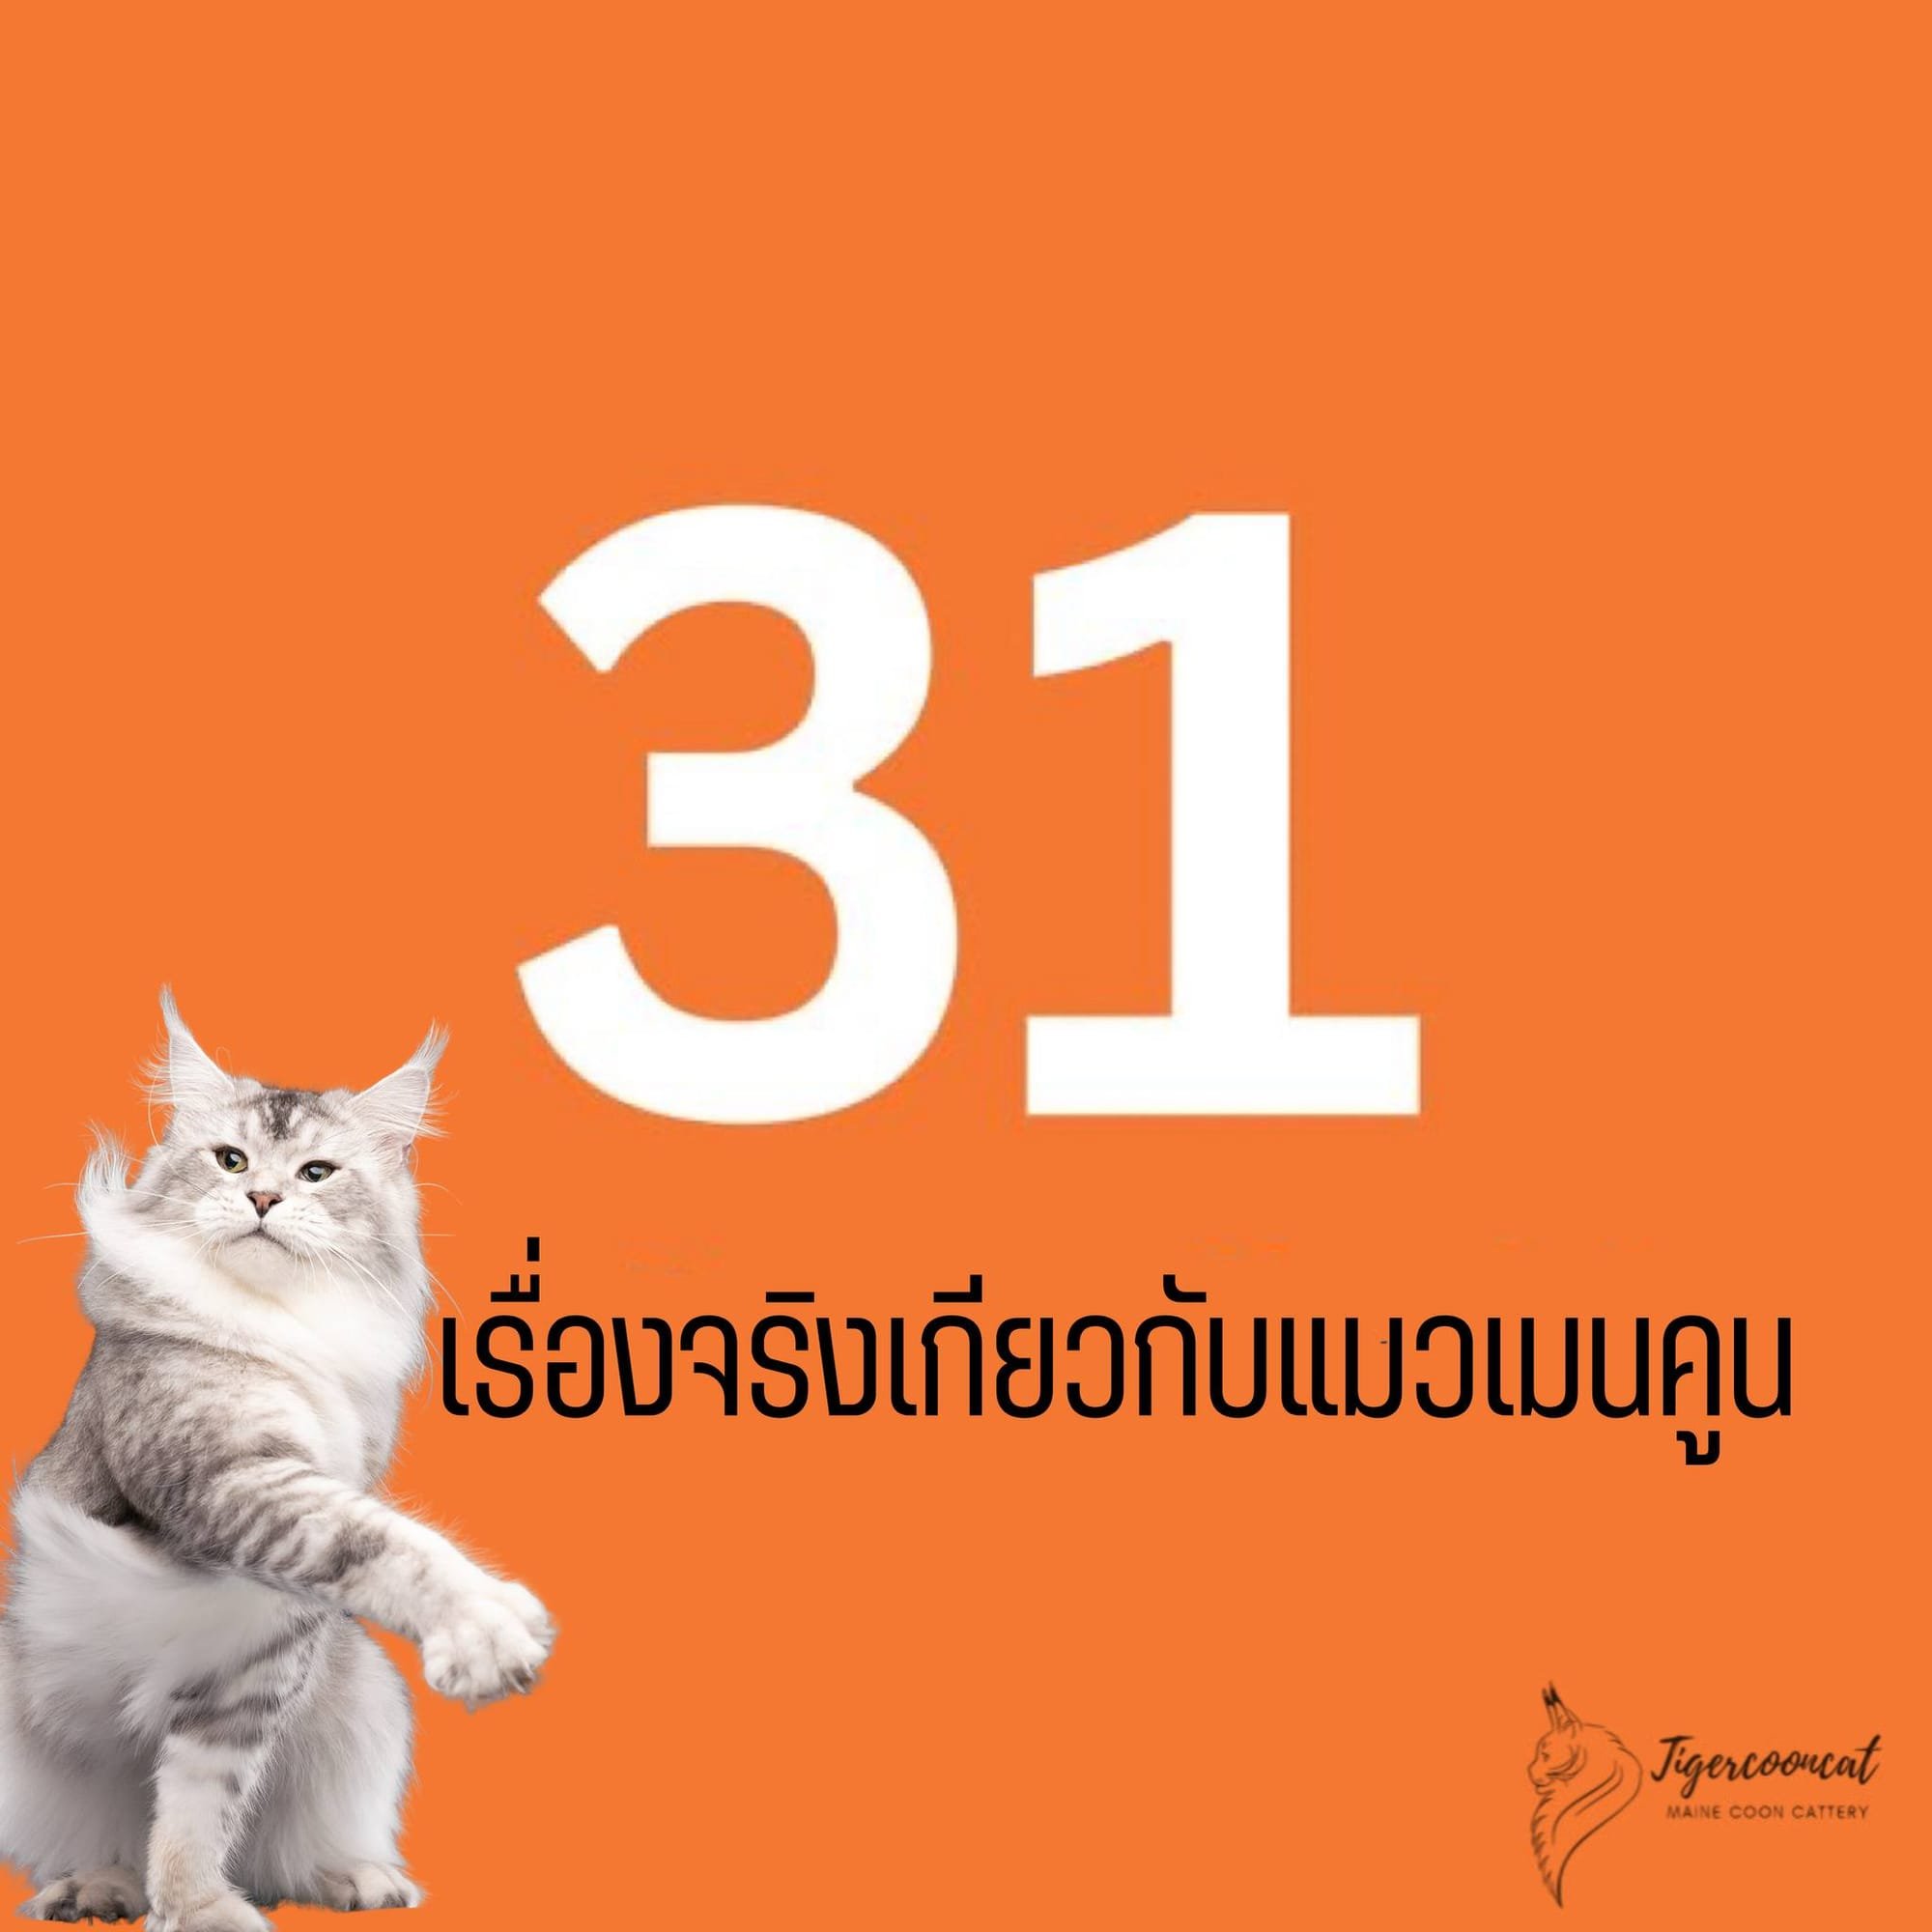 31 เรื่องจริงเกี่ยวกับแมวเมนคูน